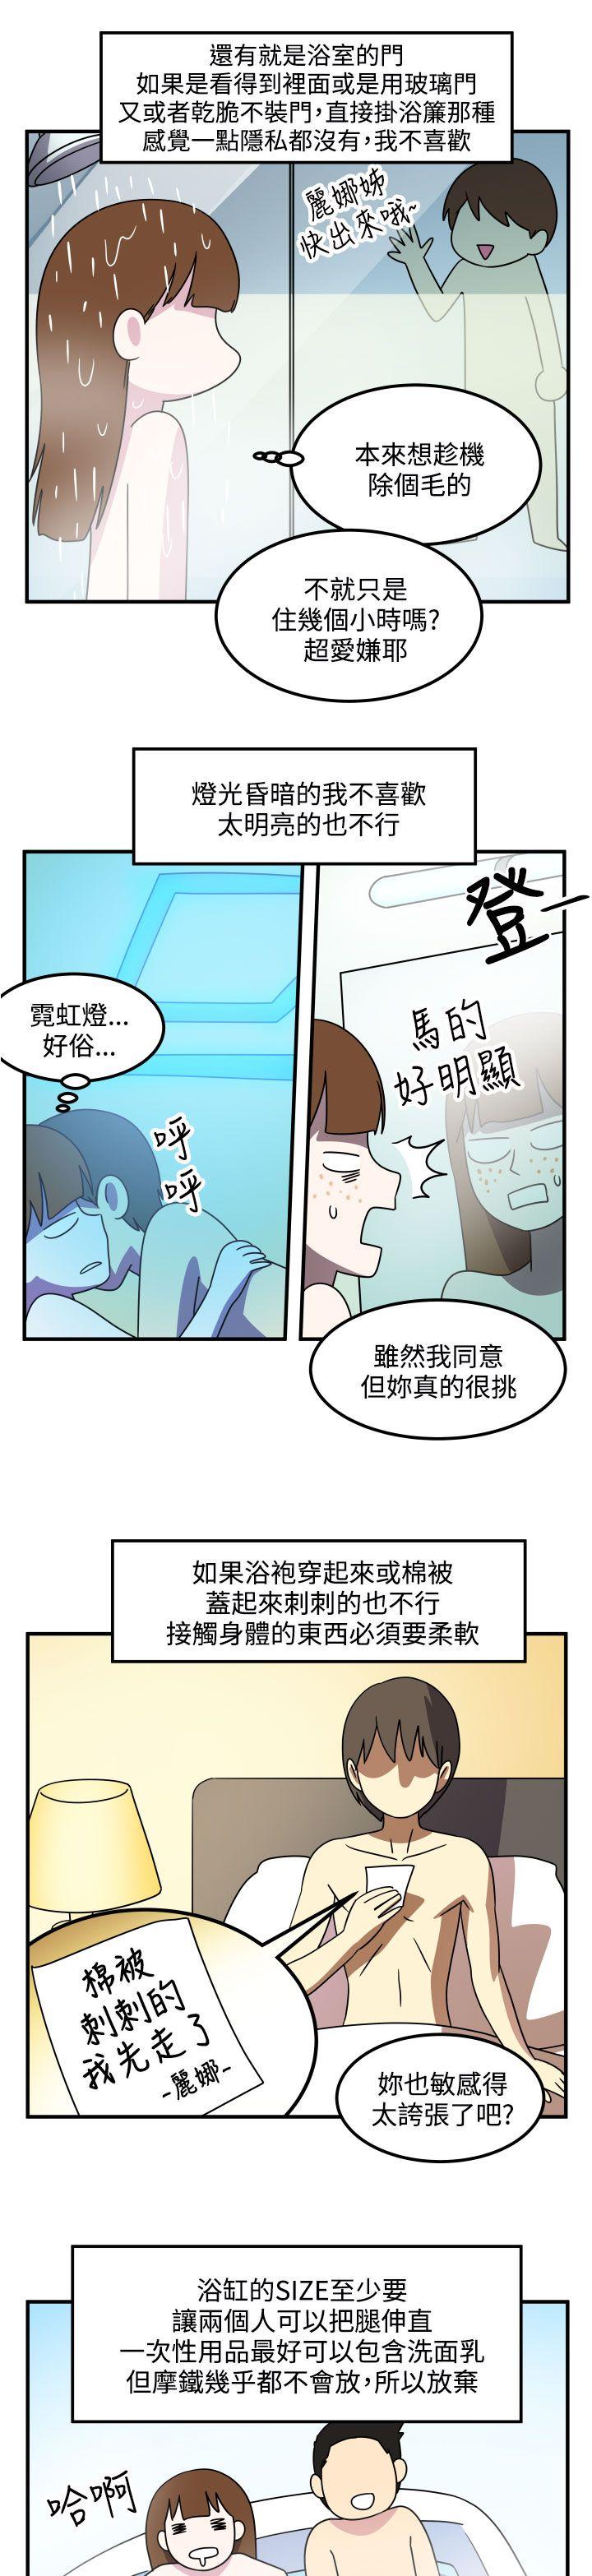 韩国污漫画 腹黑女的異想世界 第21话 11